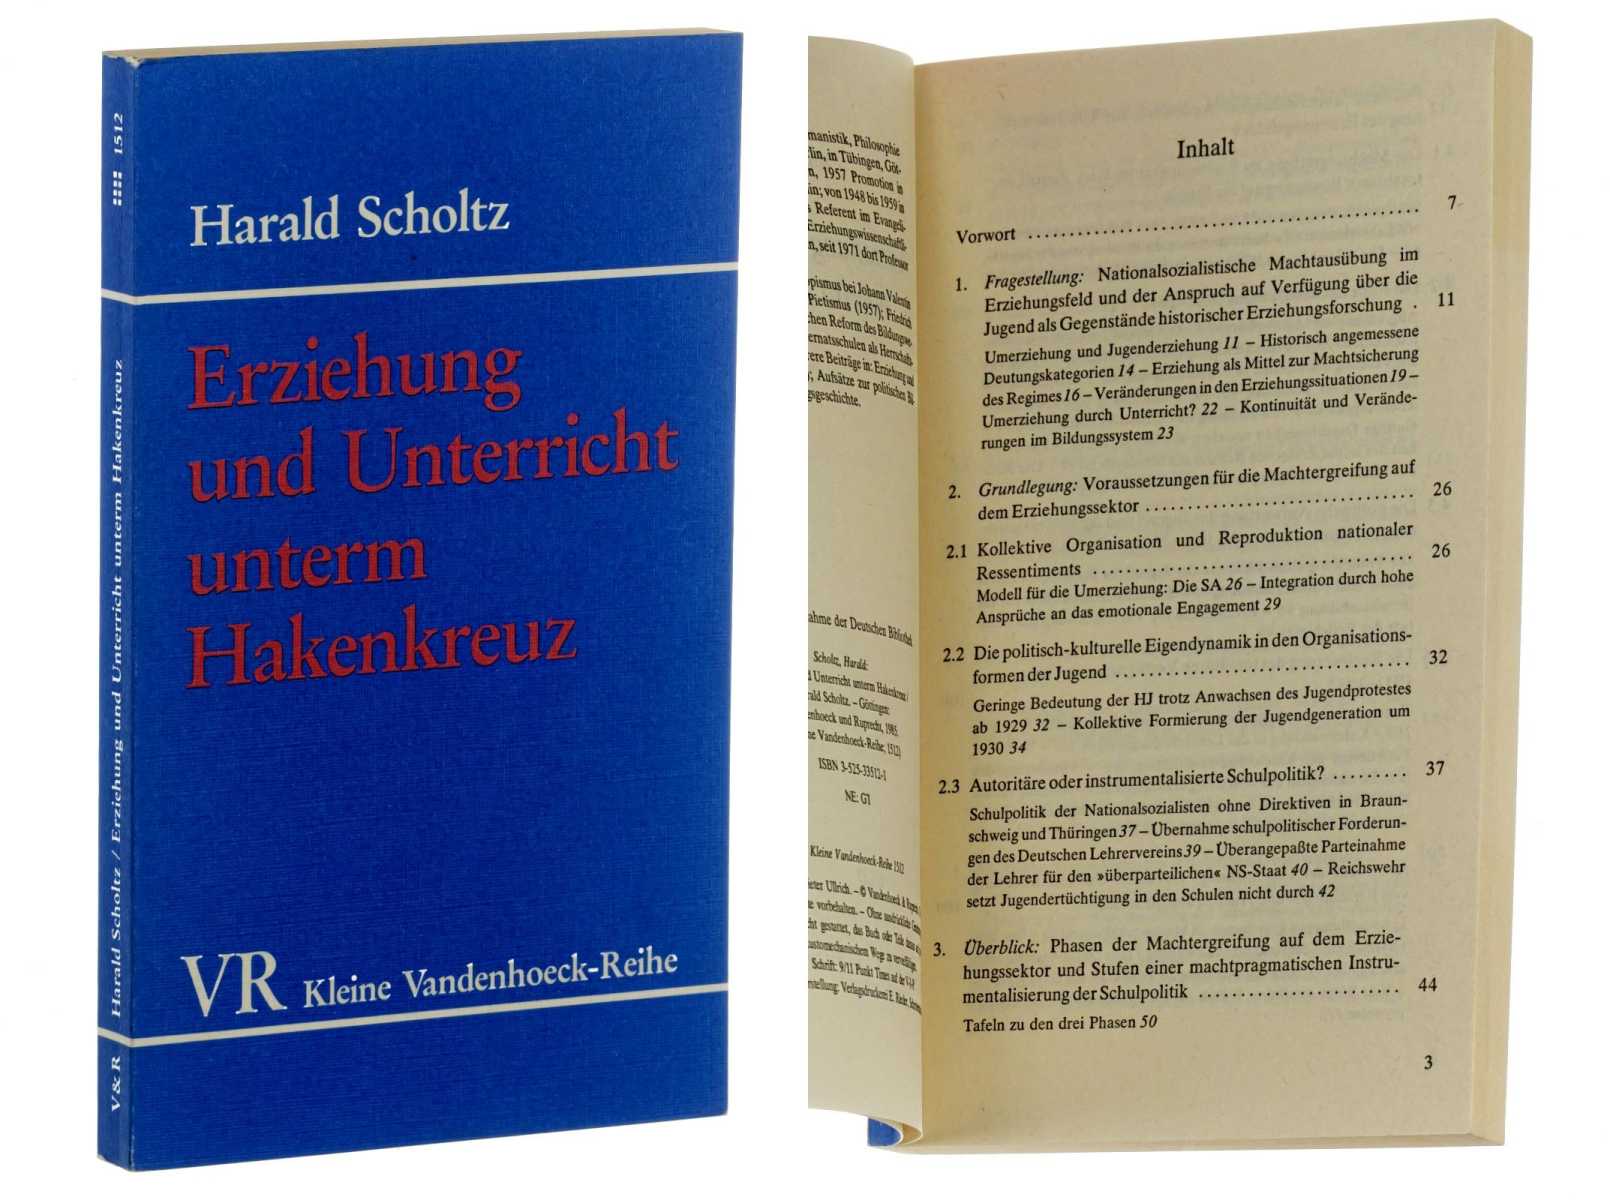 Scholtz, Harald:  Erziehung und Unterricht unterm Hakenkreuz. 